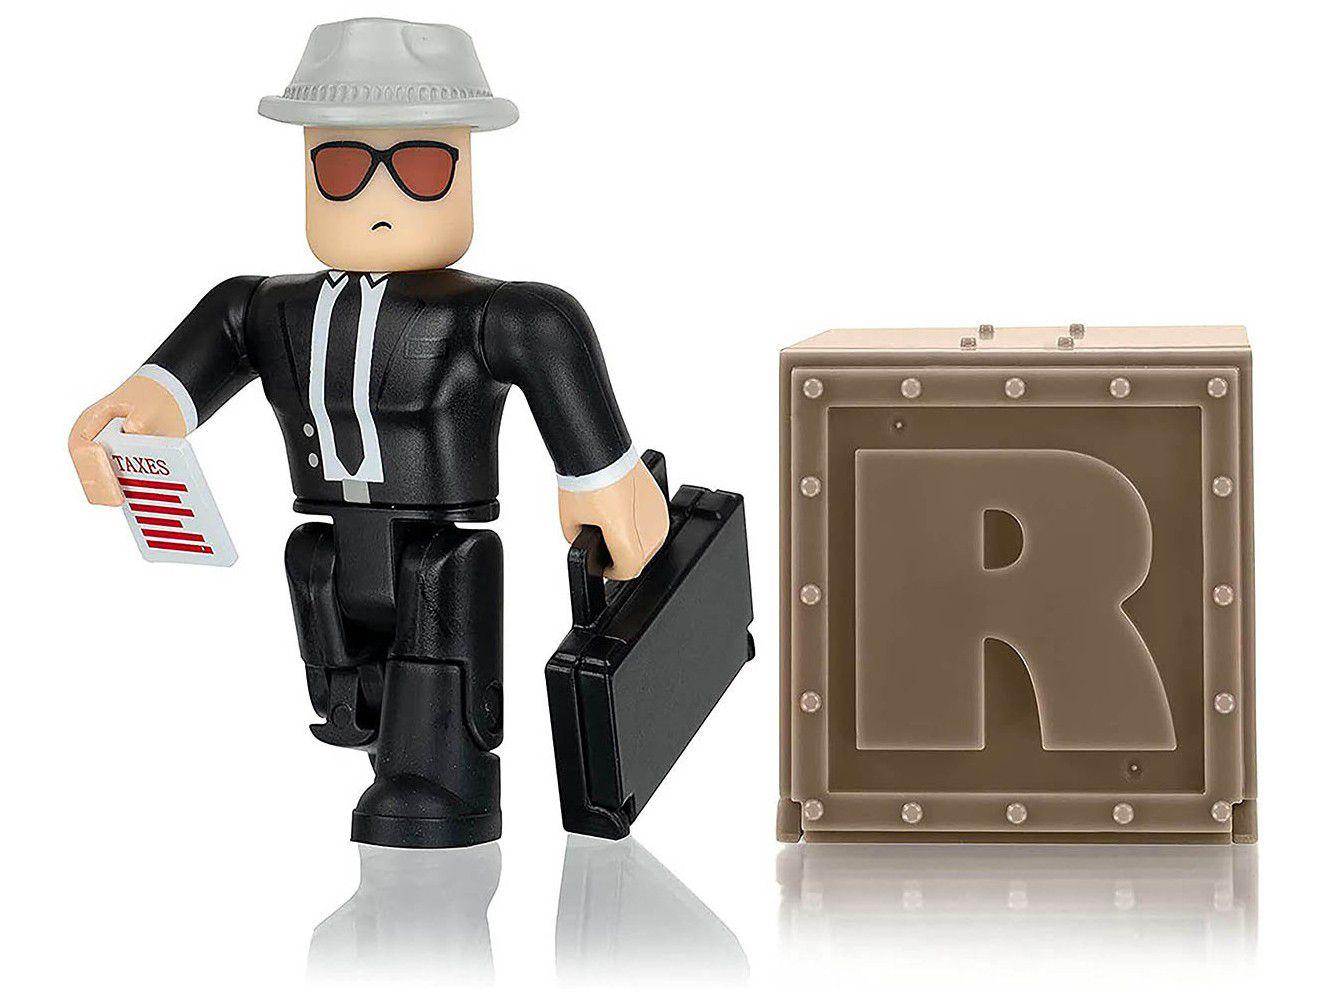 Mini Figura Roblox Deluxe Mystery Pack - Sunny Brinquedos com